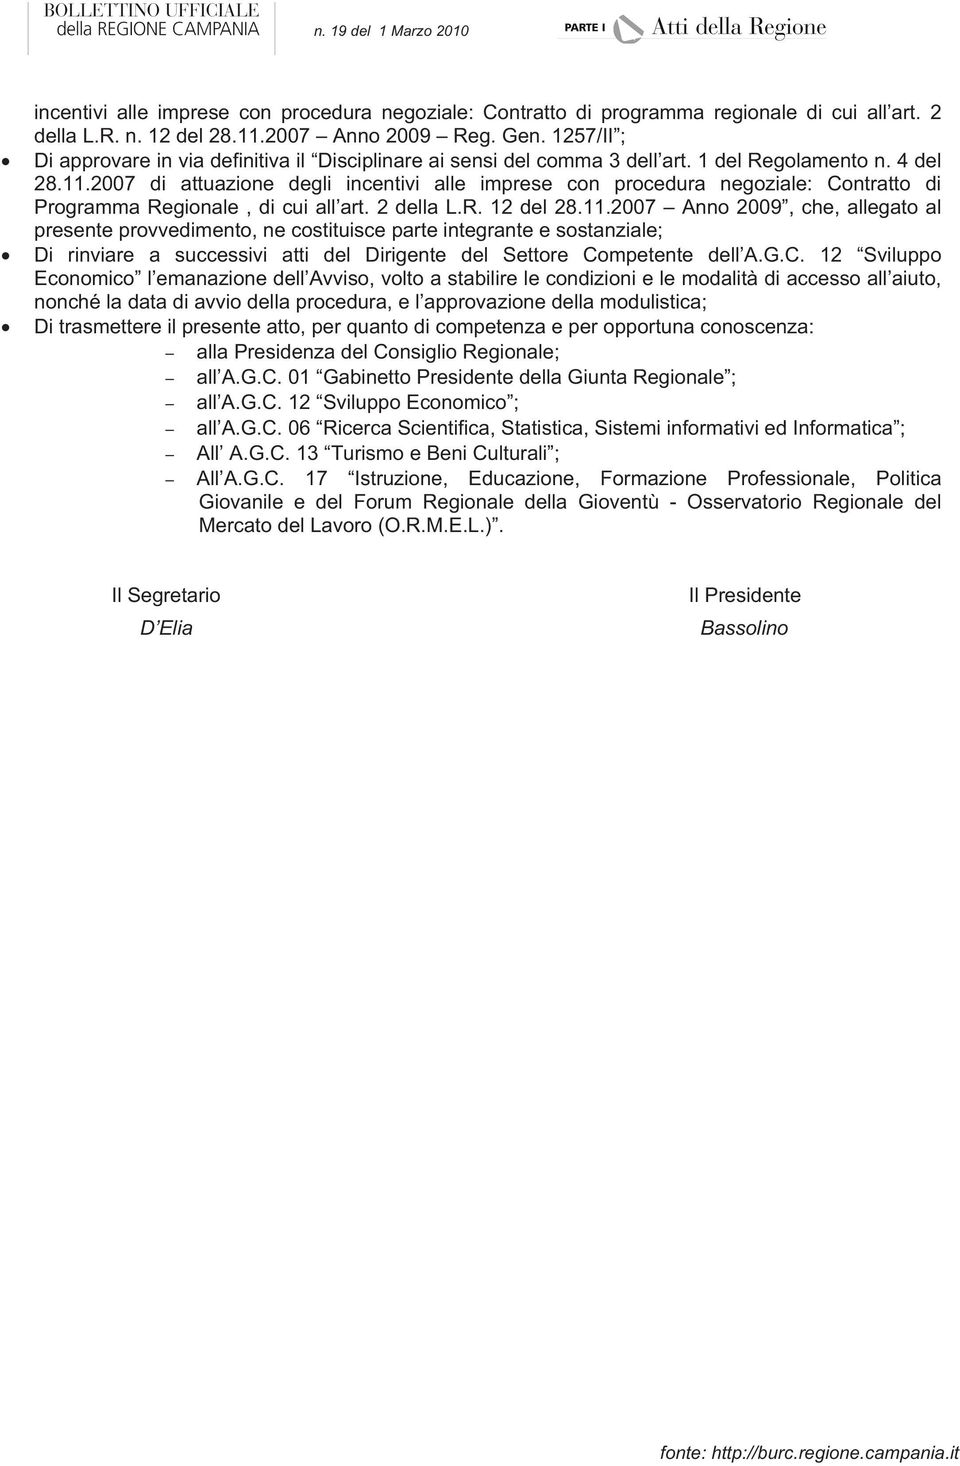 2007 di attuazione degli incentivi alle imprese con procedura negoziale: Contratto di Programma Regionale, di cui all art. 2 della L.R. 12 del 28.11.